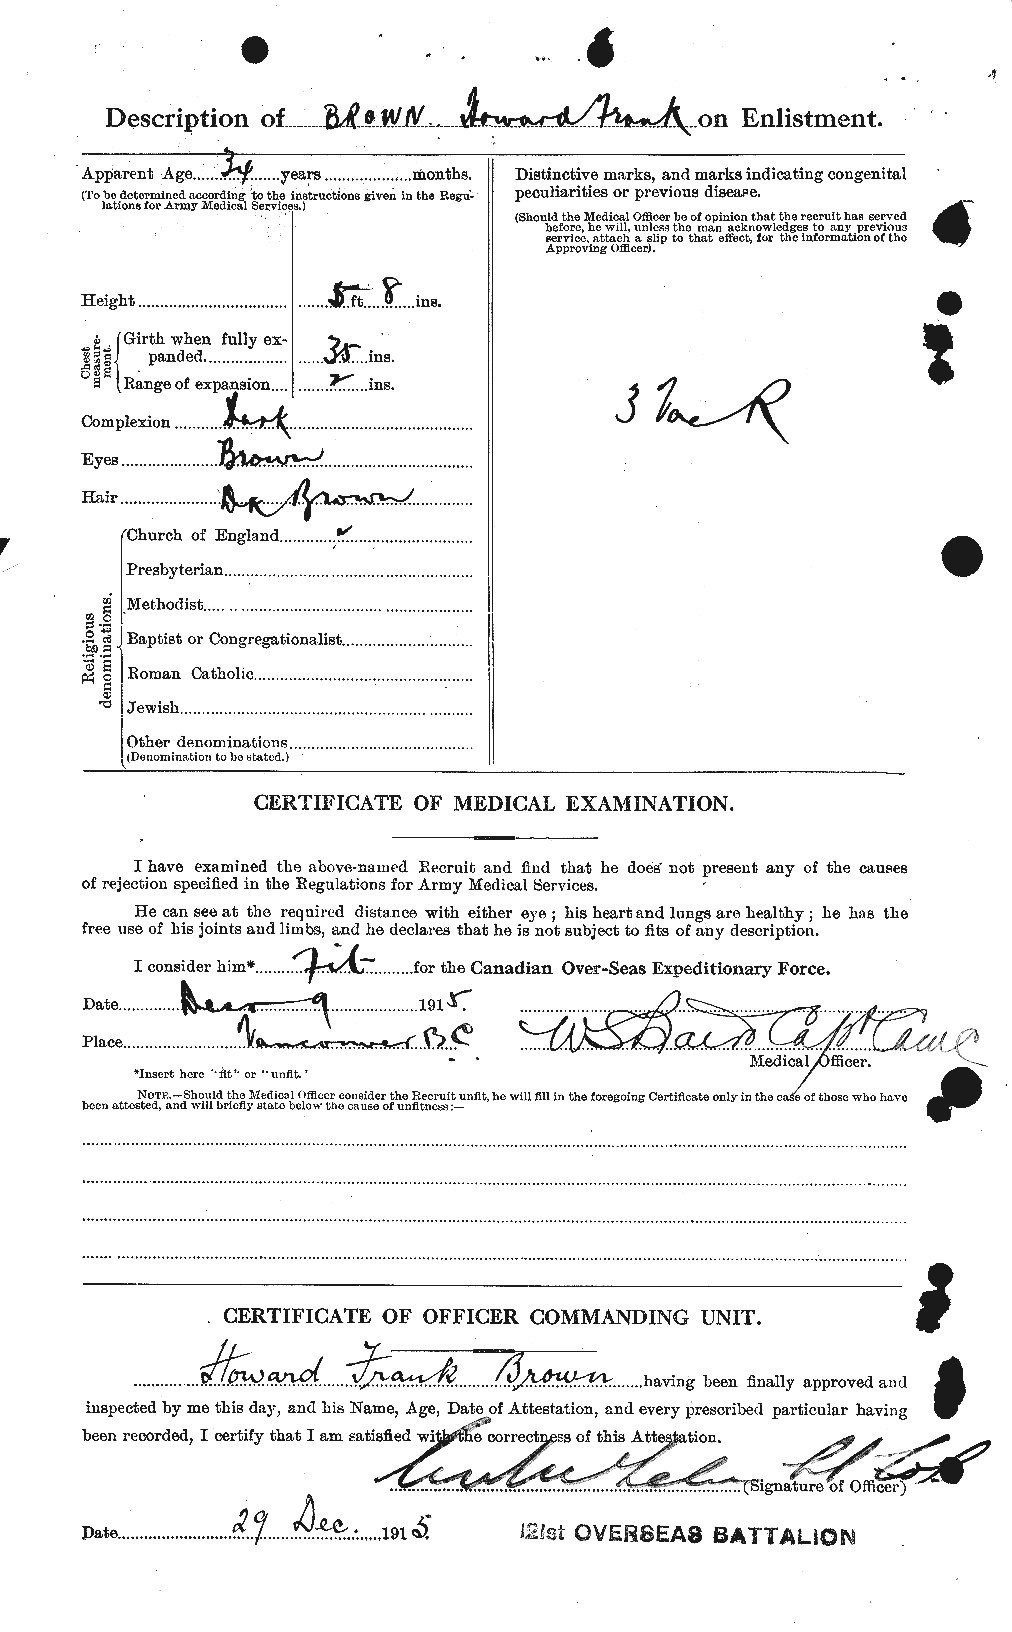 Dossiers du Personnel de la Première Guerre mondiale - CEC 265617b